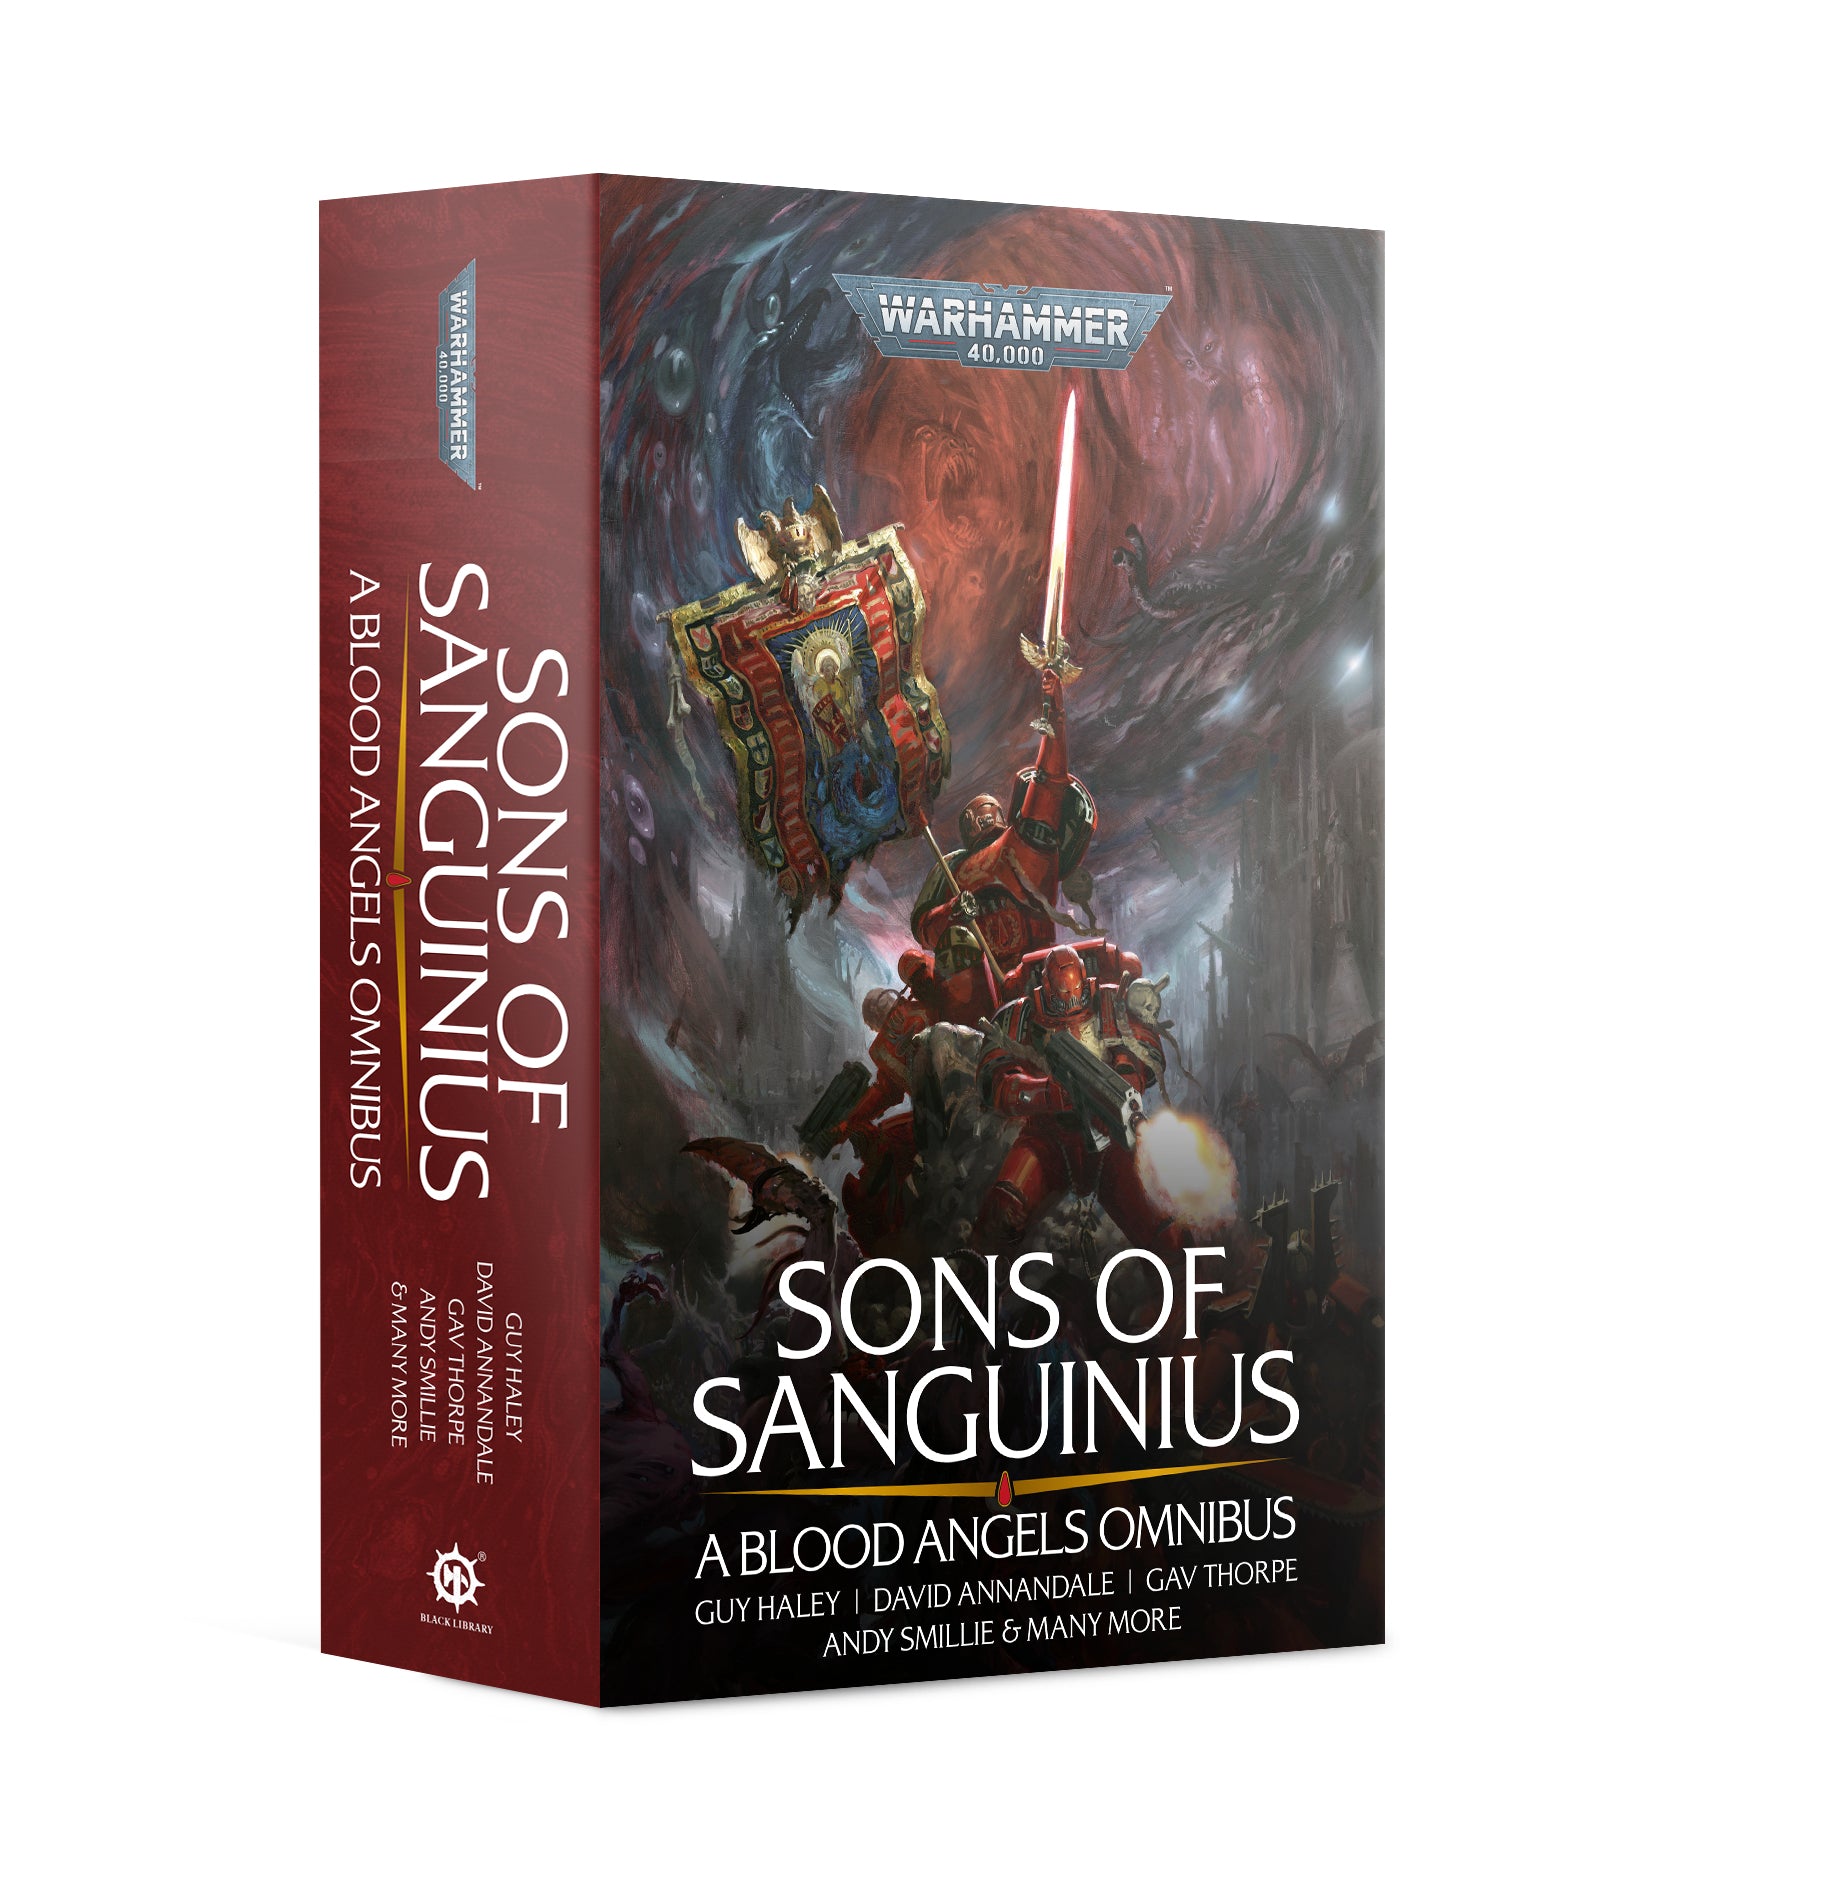 Sons of Sanguinius - The Omnibus